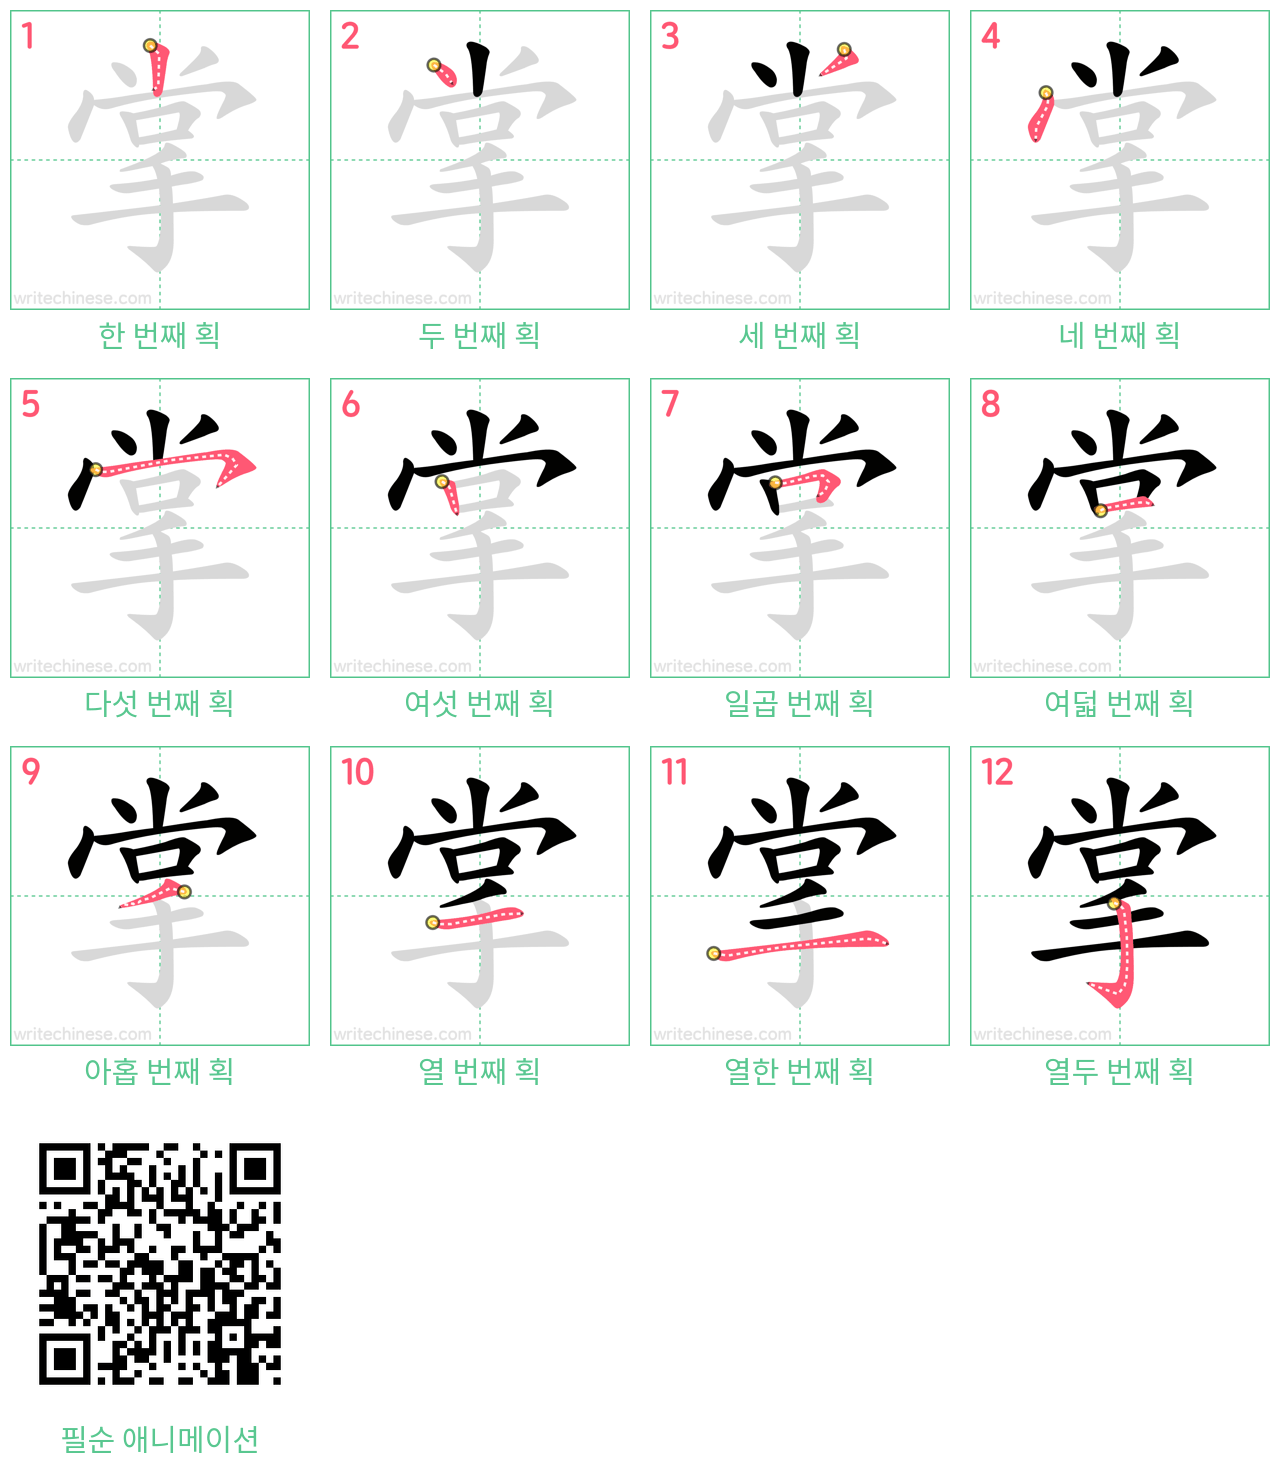 掌 step-by-step stroke order diagrams